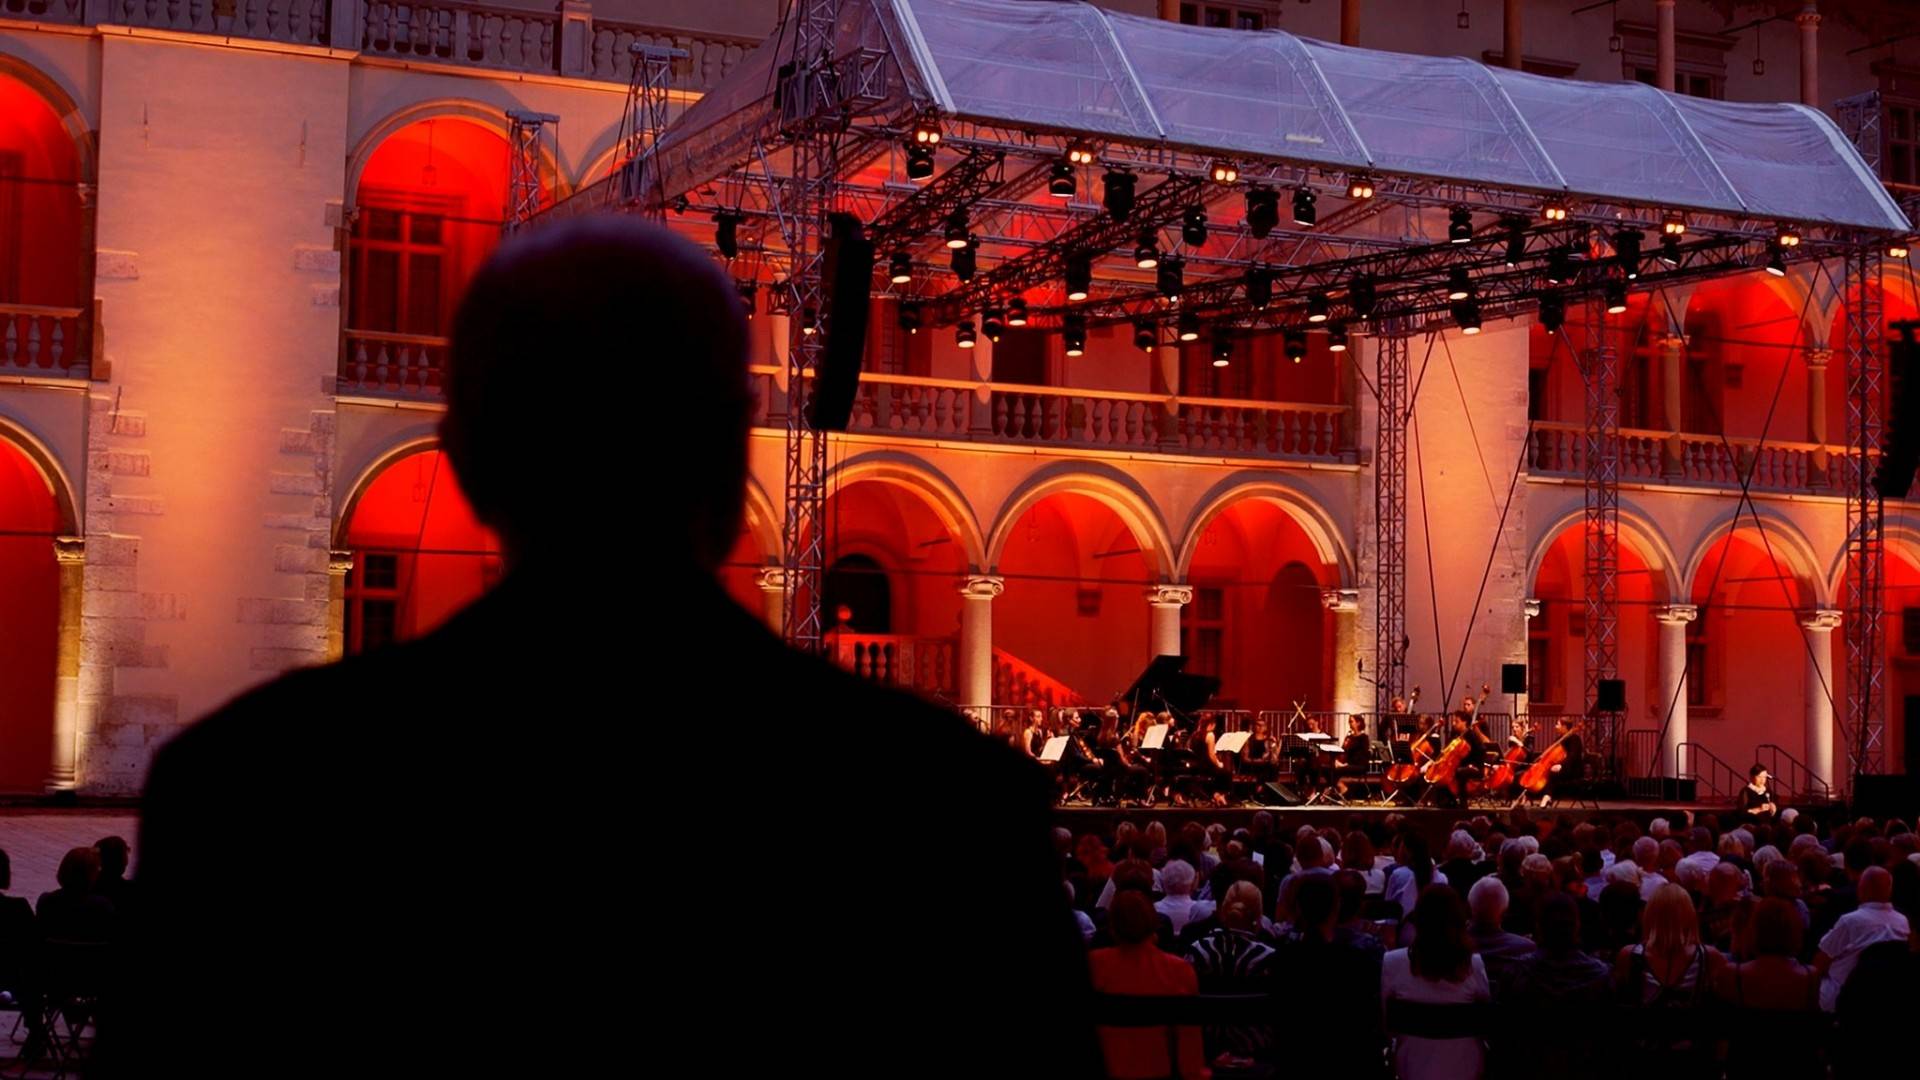 Spektakularny "Wawel o zmierzchu", 16. Letni festiwal muzyczny